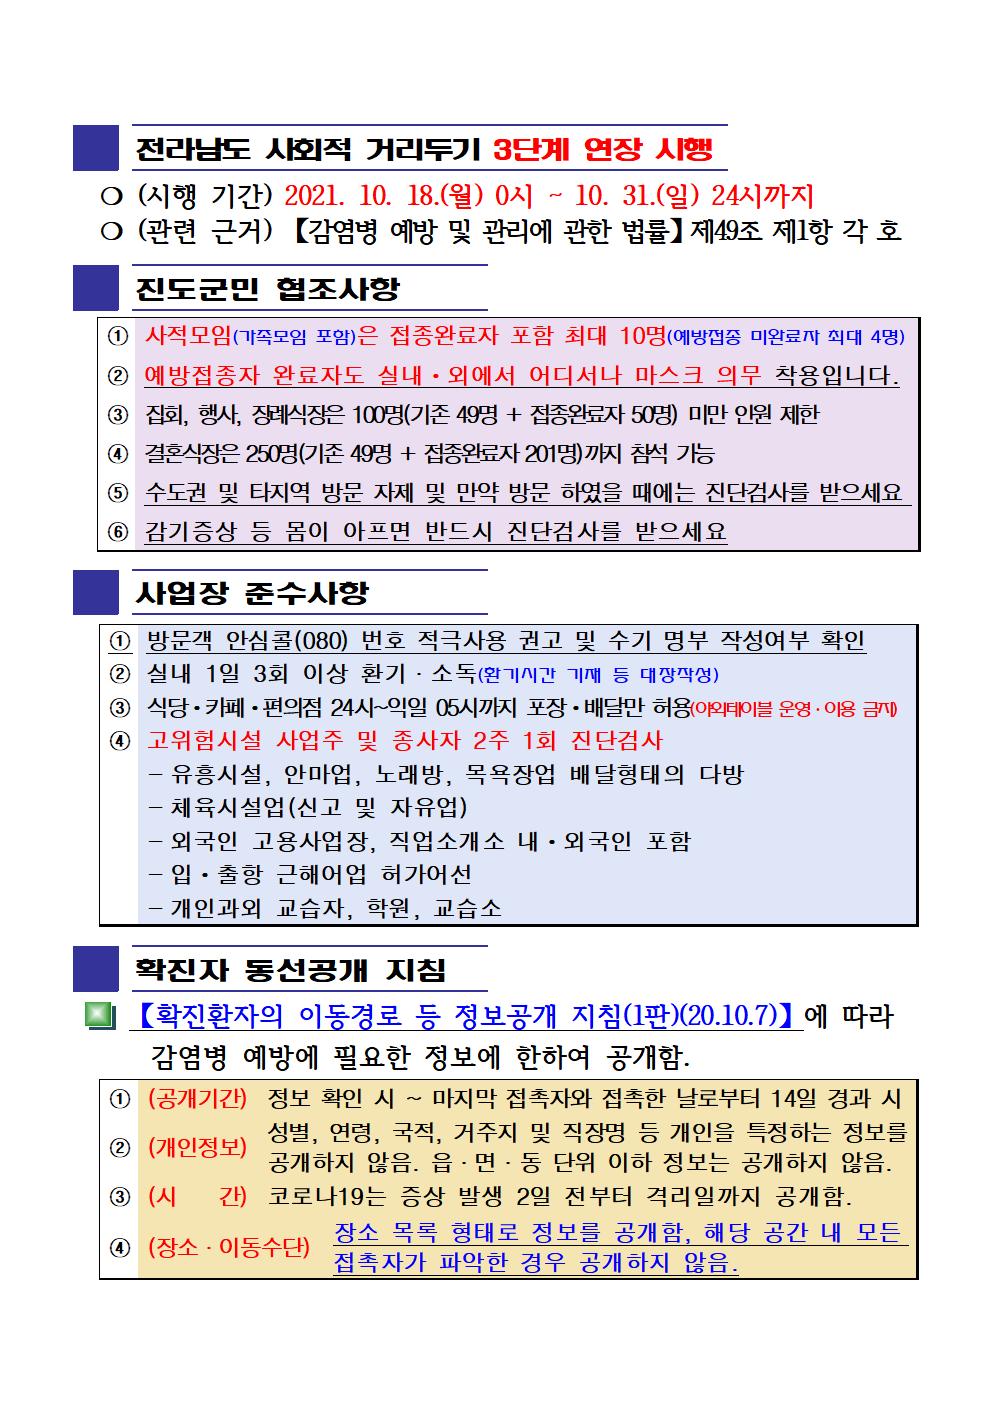 2021년 코로나19 대응 일일상황보고(10월 25일 24시 기준) 첨부#2